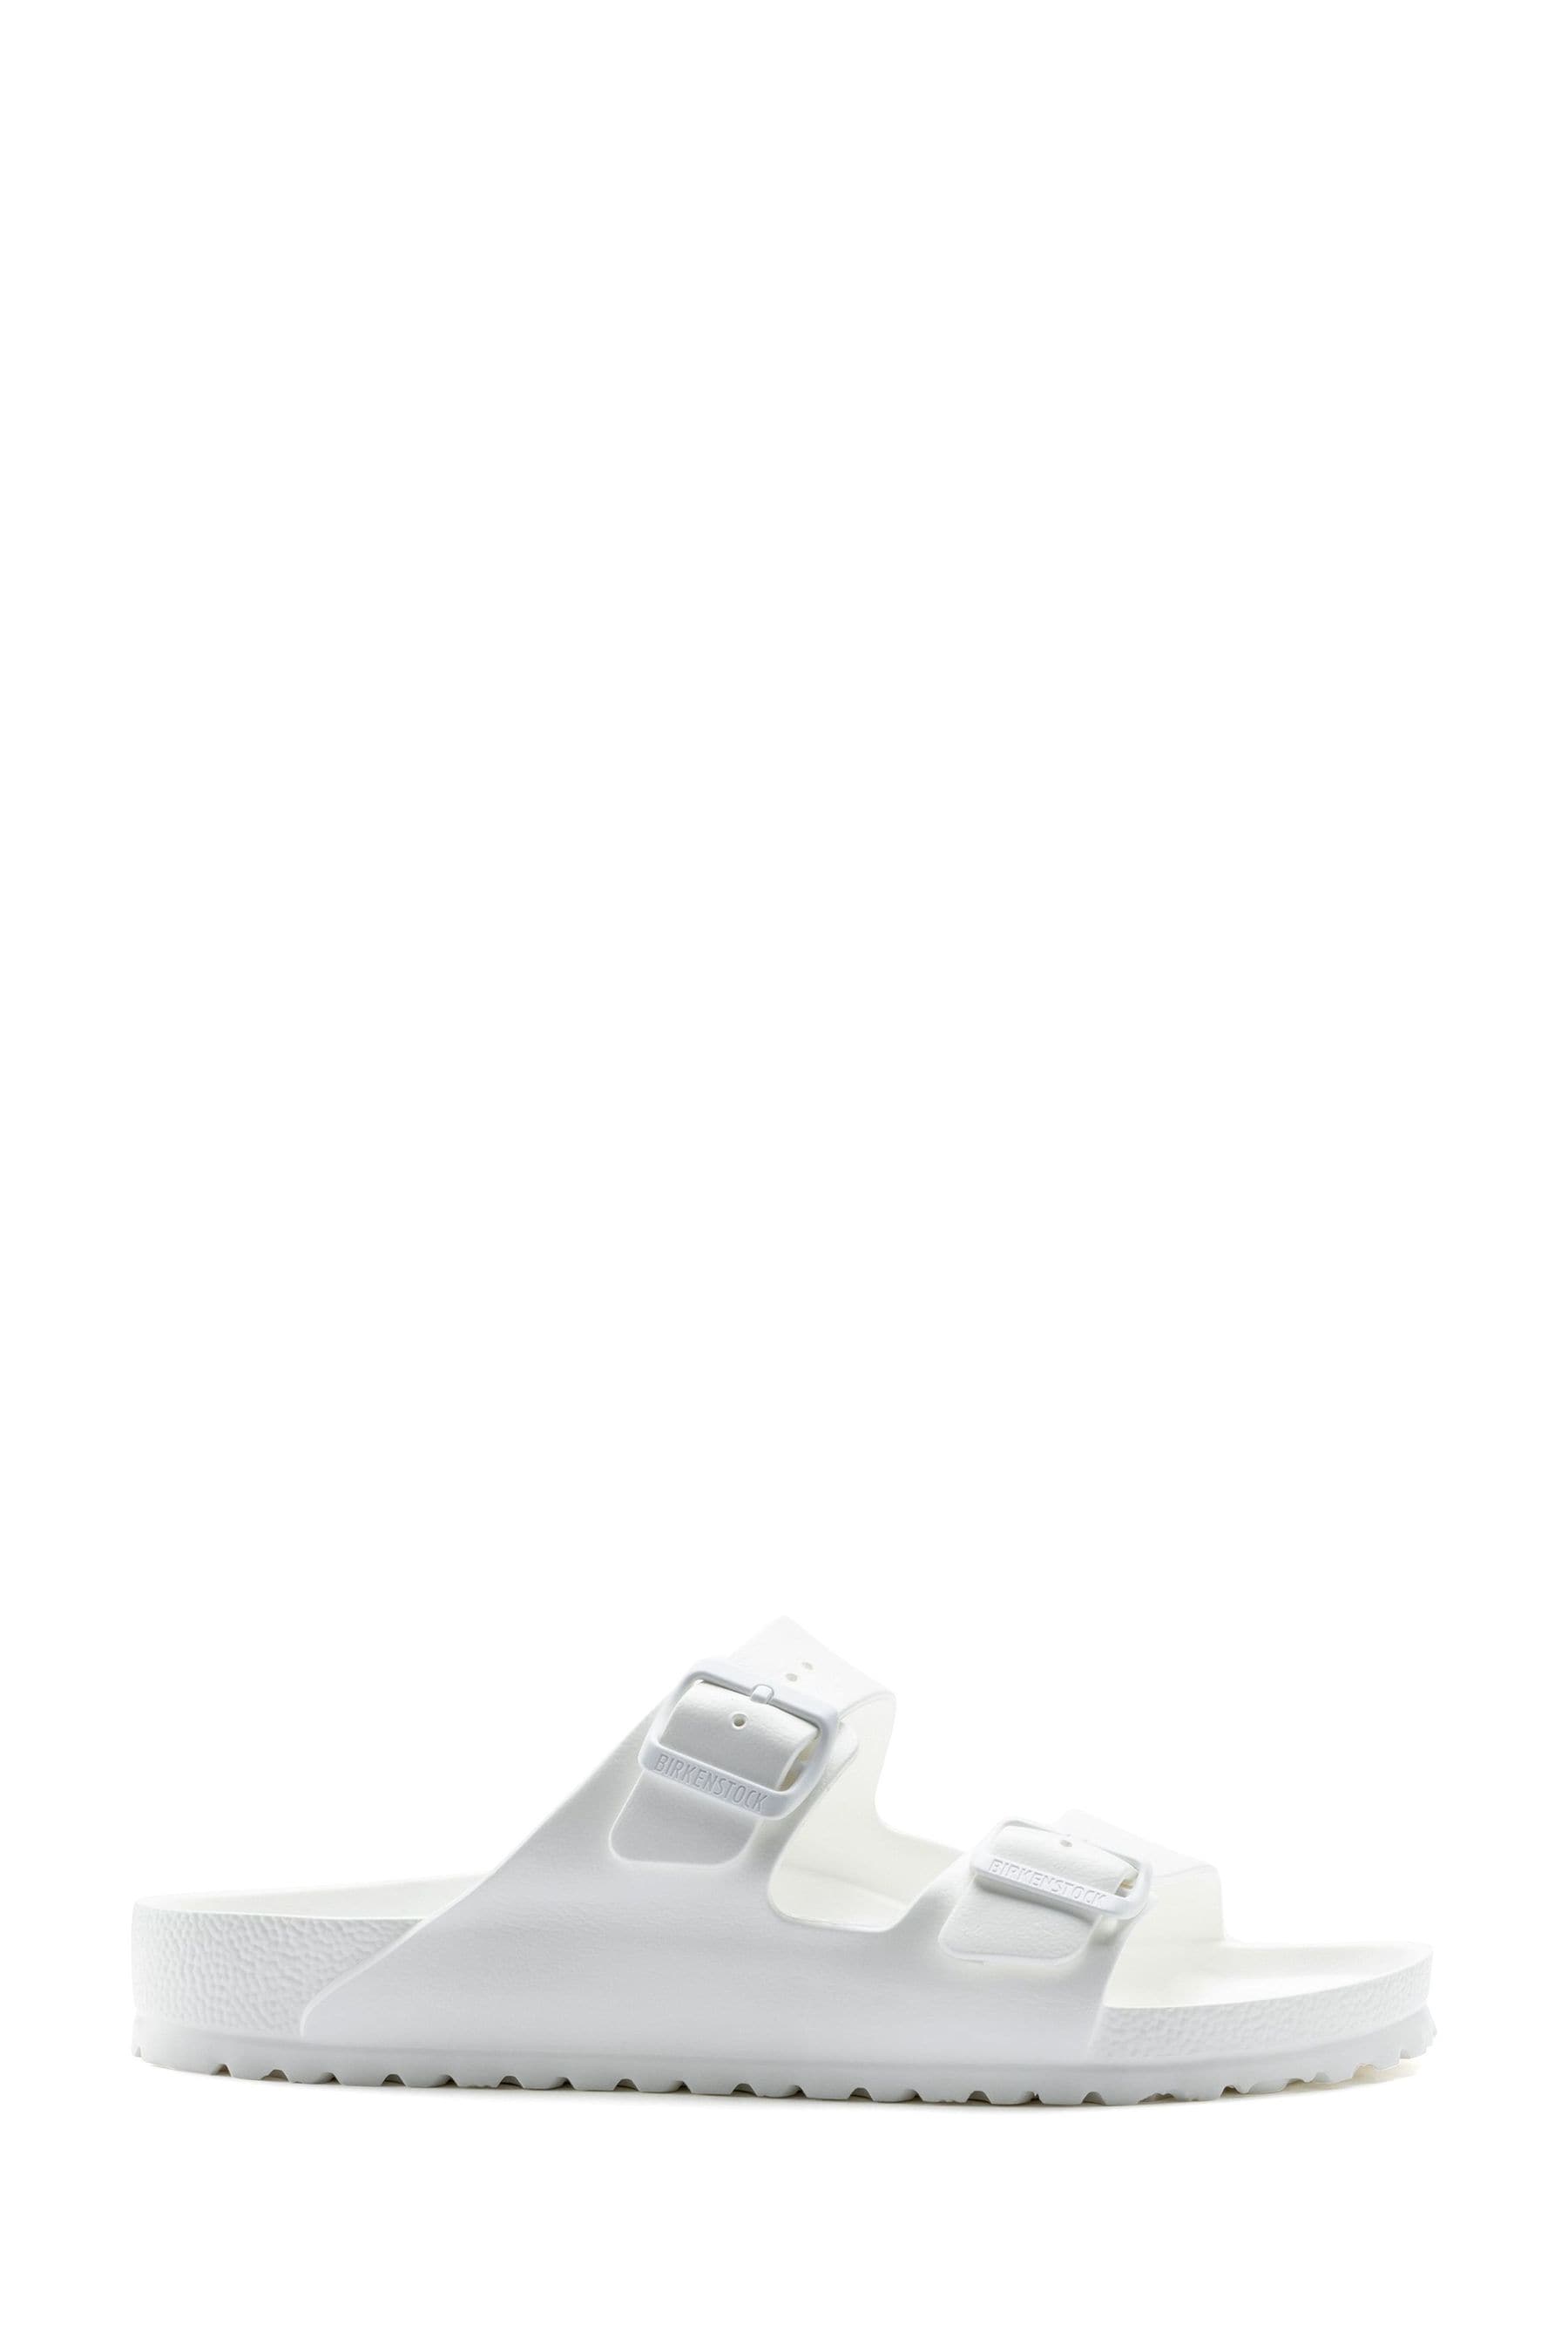 Buy Birkenstock Arizona EVA Sandals from the Next UK online shop